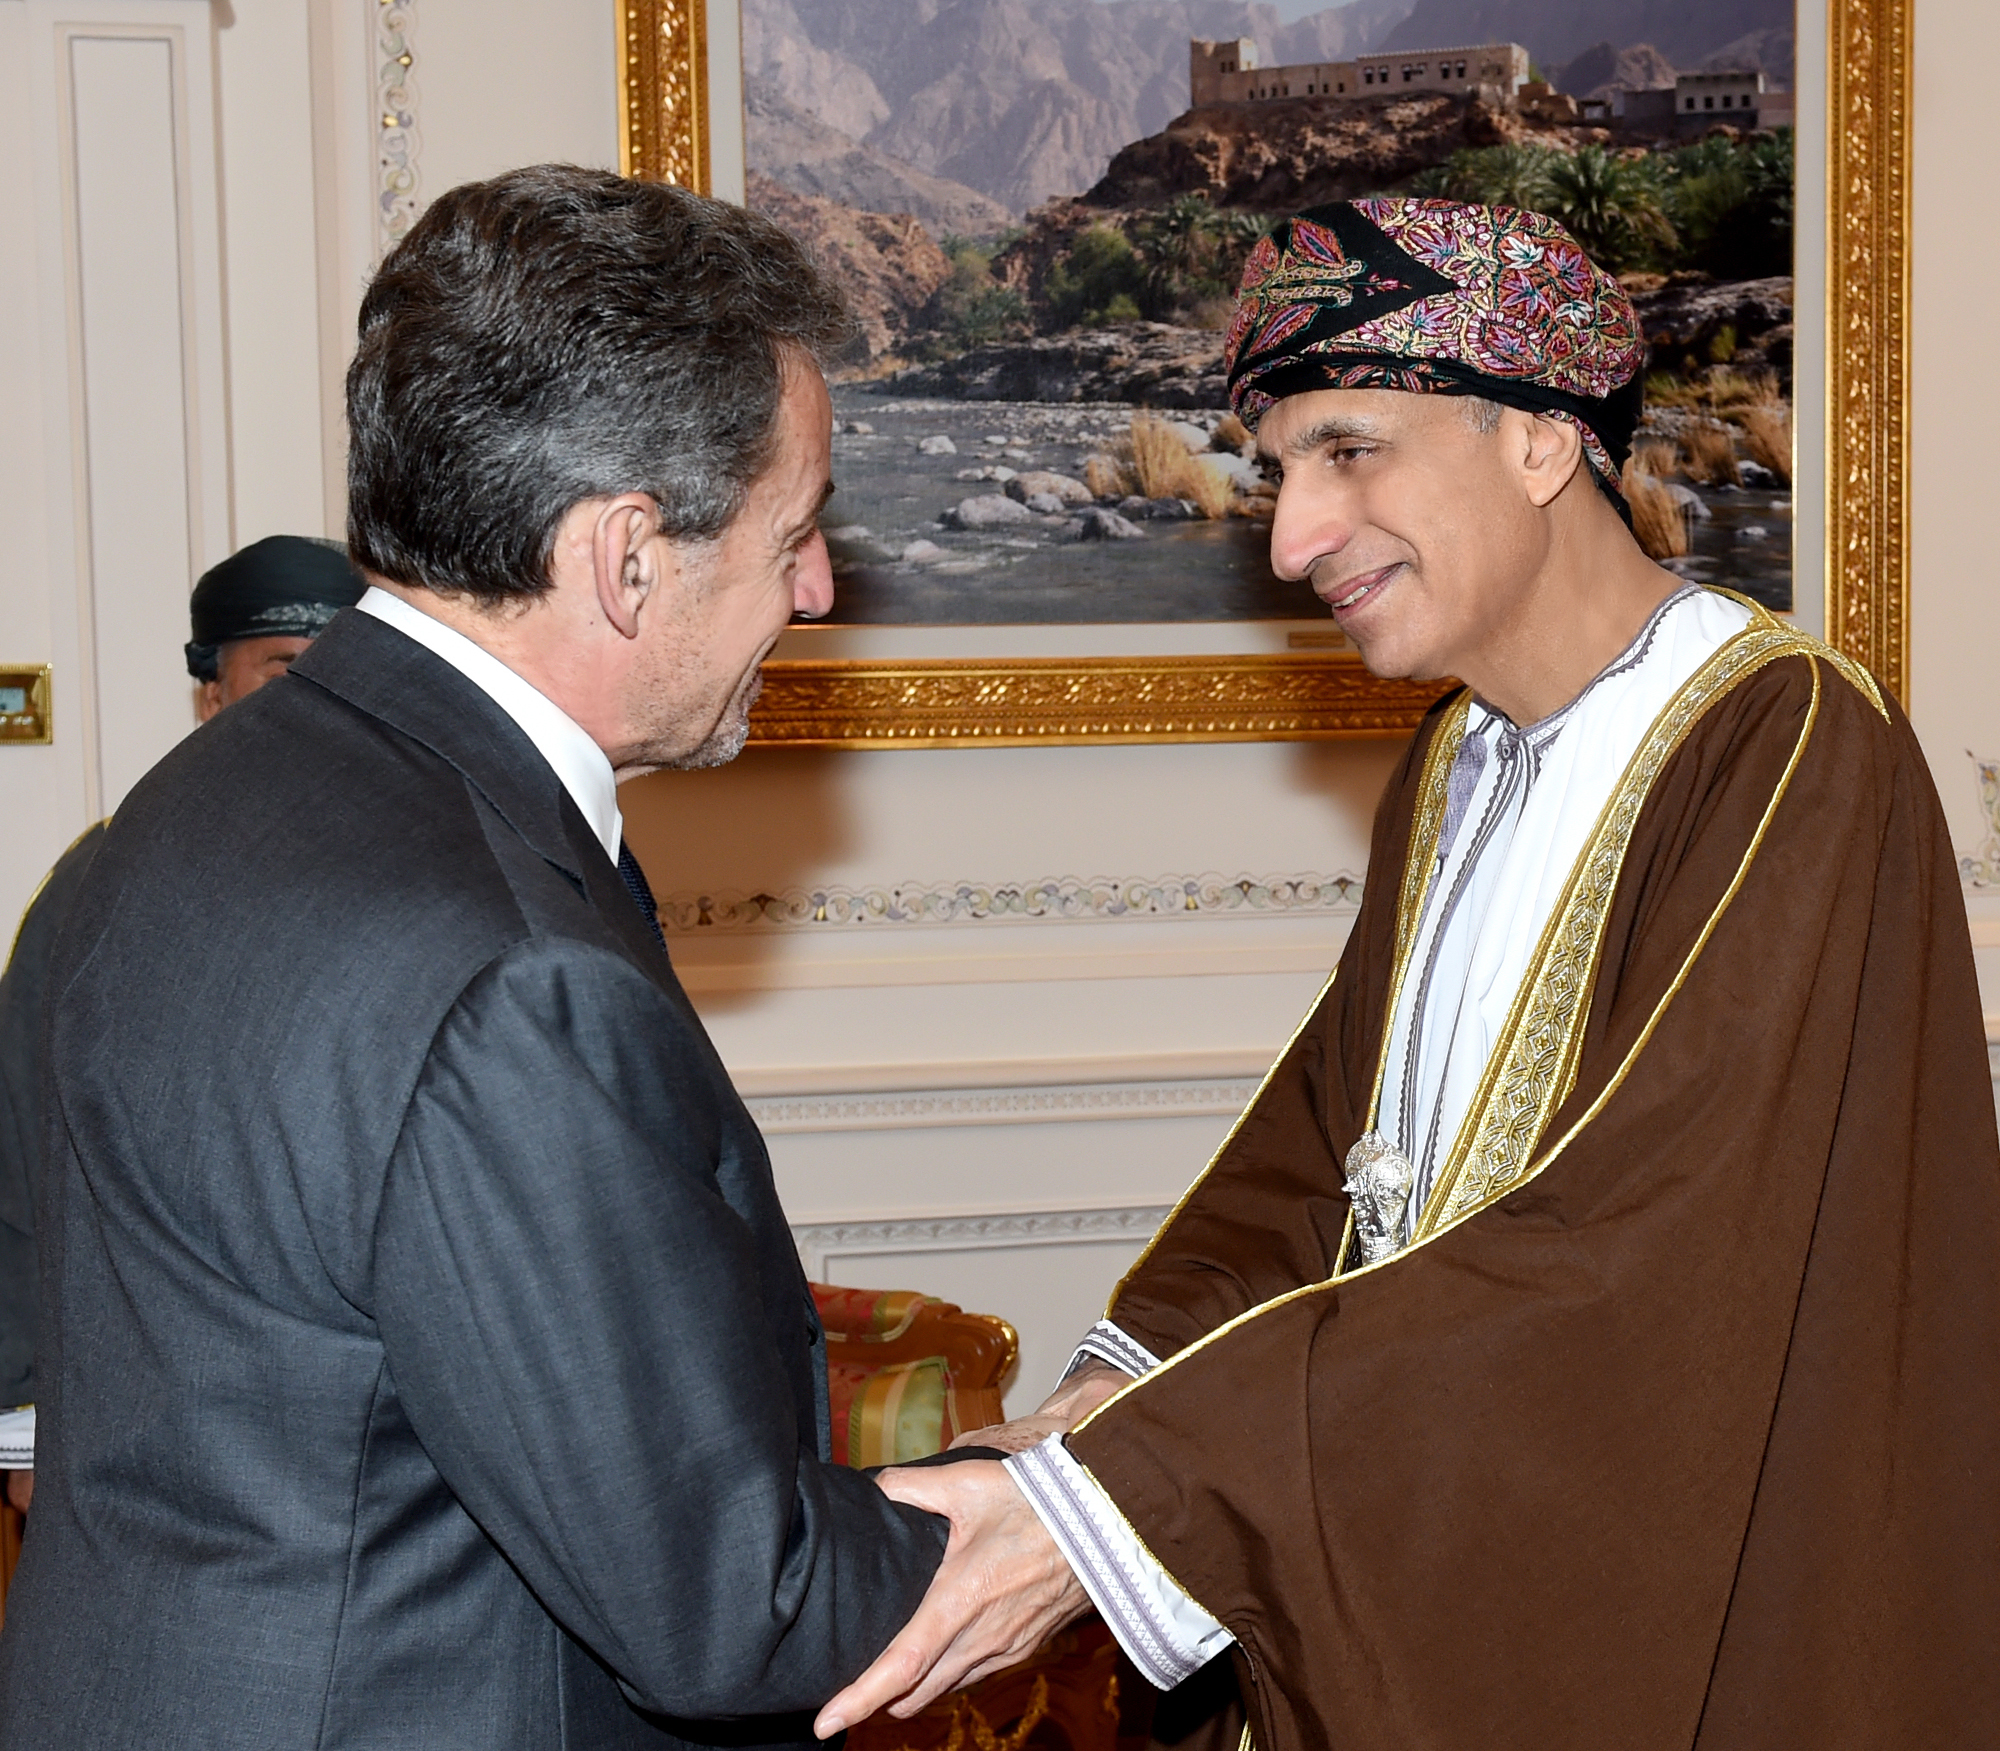 السيد فهد بن محمود يستقبل "نيكولا ساركوزي" الرئيس الأسبق لفرنسا